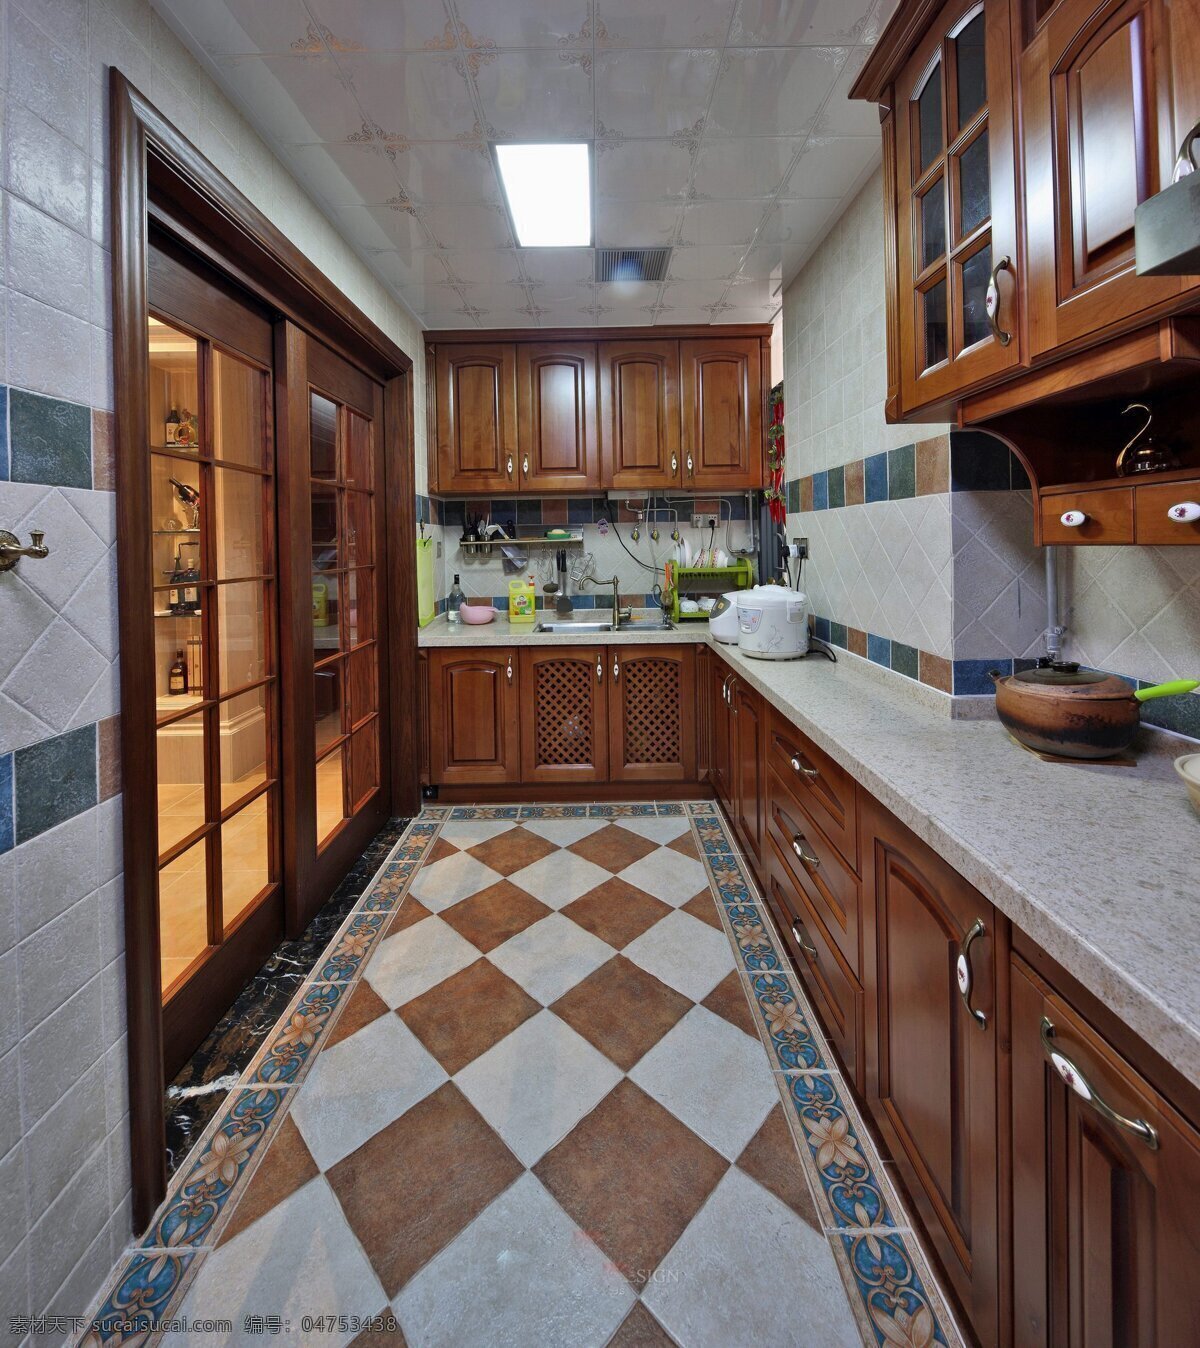 美式 厨房 橱柜 设计图 家居 家居生活 室内设计 装修 室内 家具 装修设计 环境设计 效果图